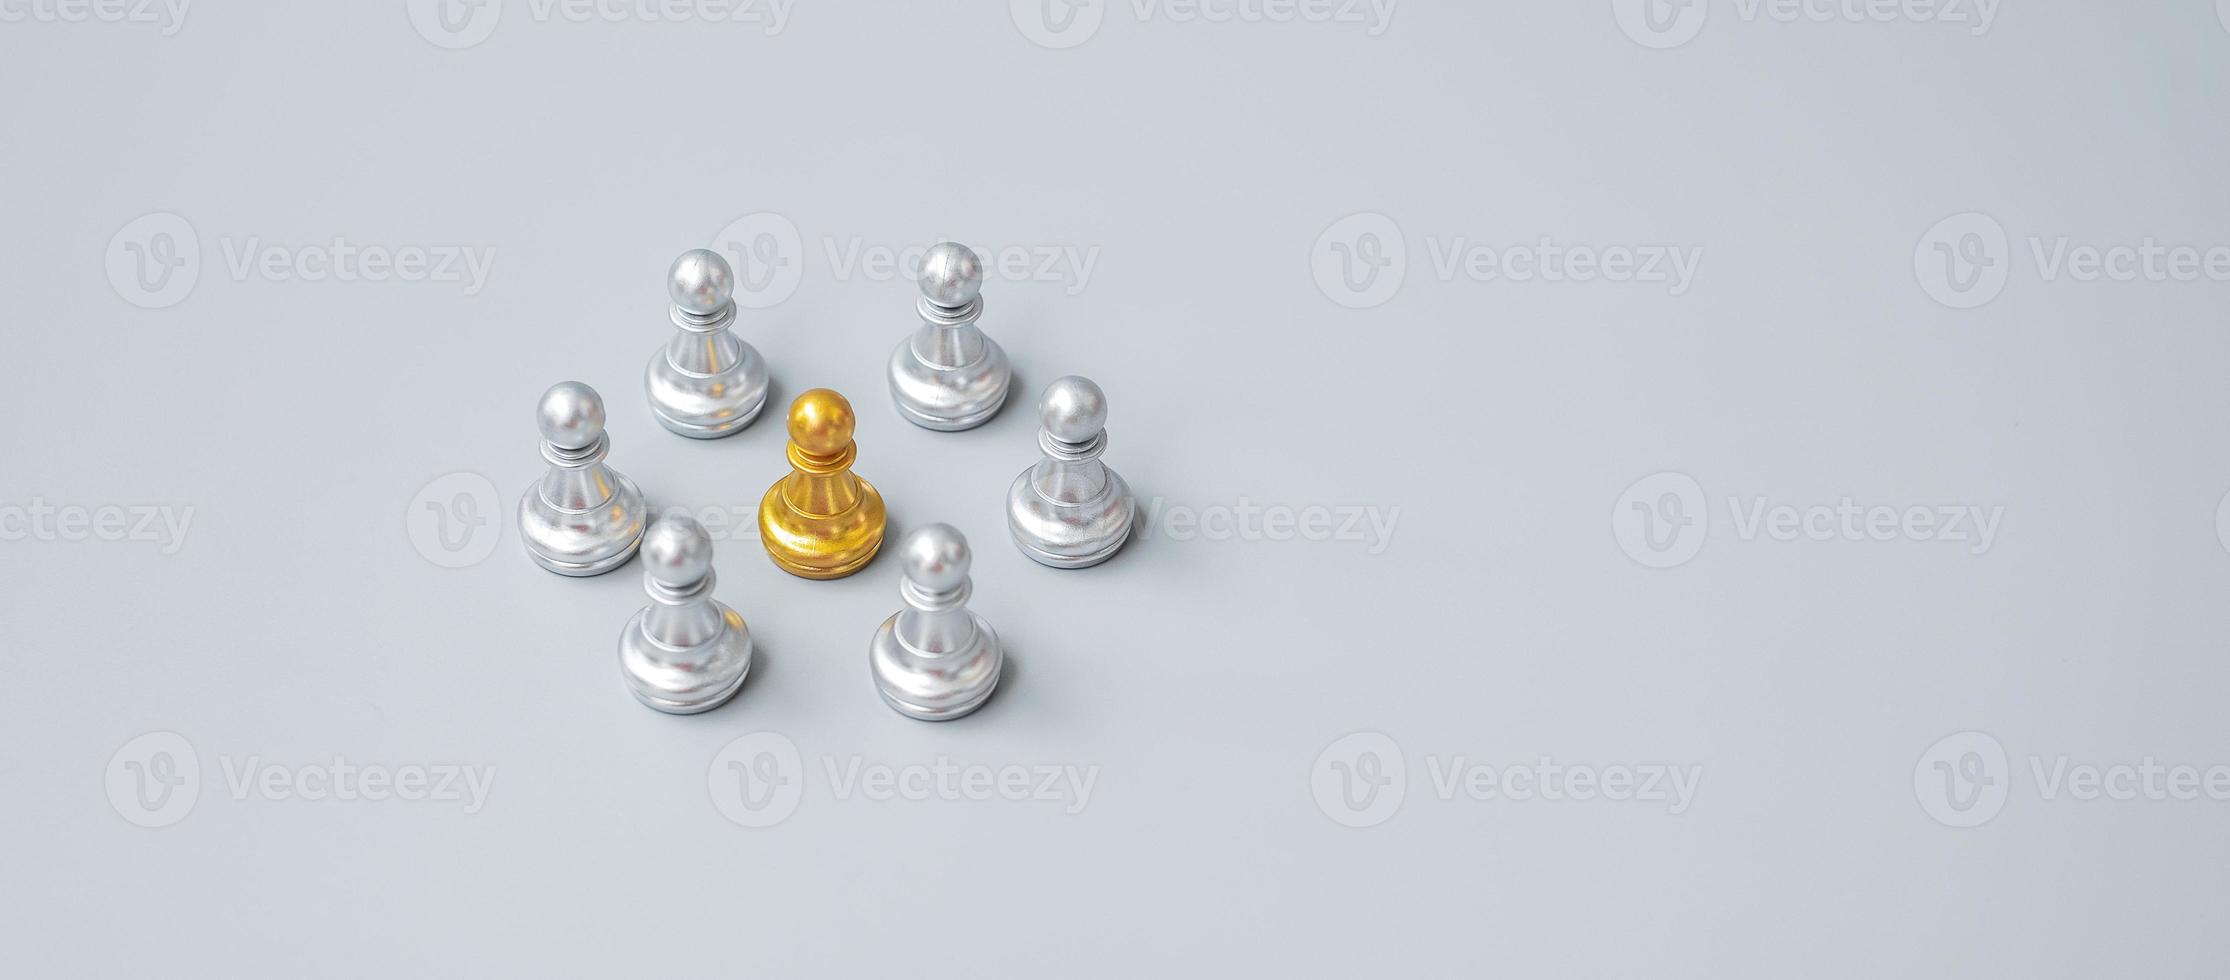 pièces de pion d'échecs en or ou homme d'affaires leader leader avec cercle d'hommes en argent. concept de leadership, d'entreprise, d'équipe et de travail d'équipe photo